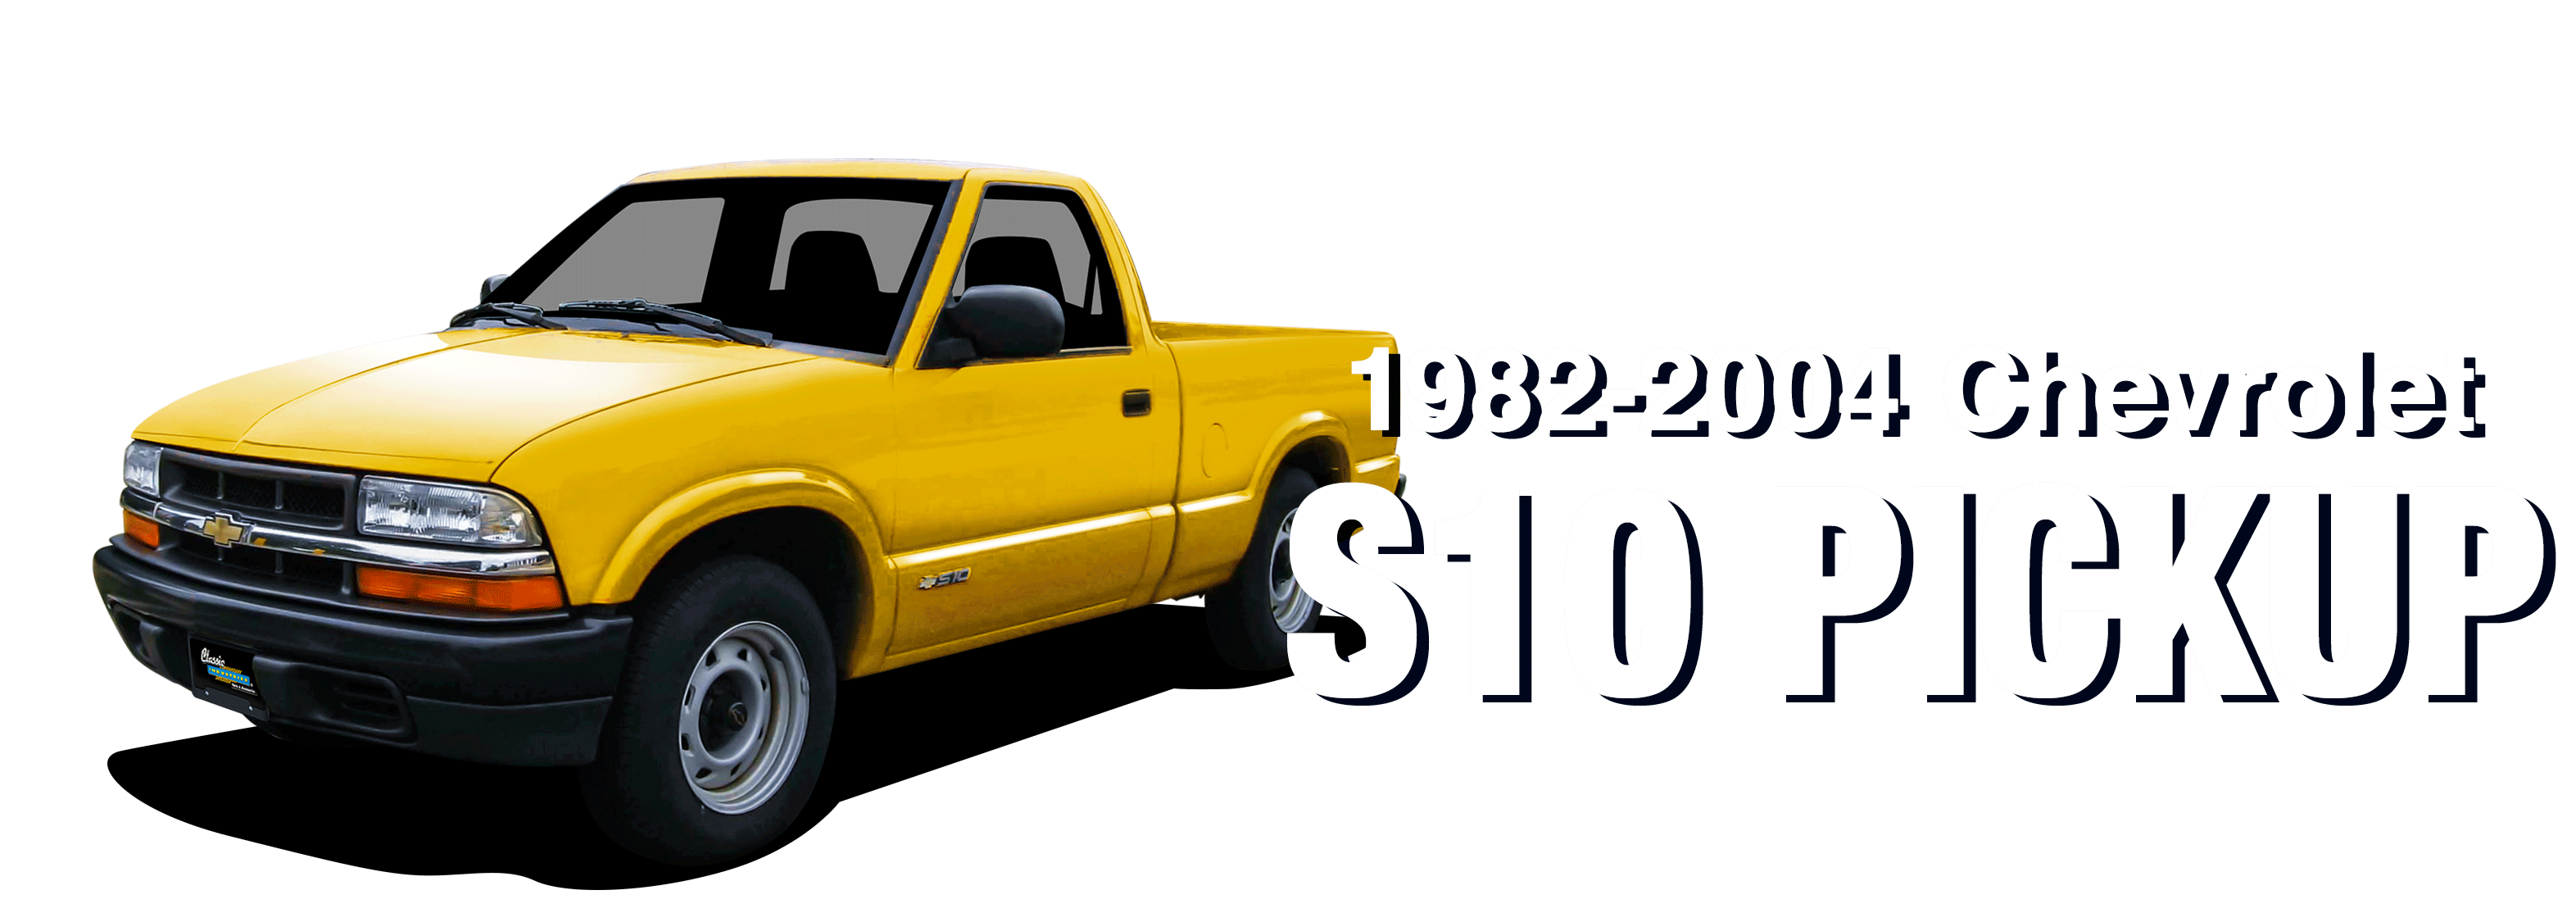 Chevrolet-S10-vehicle-desktop